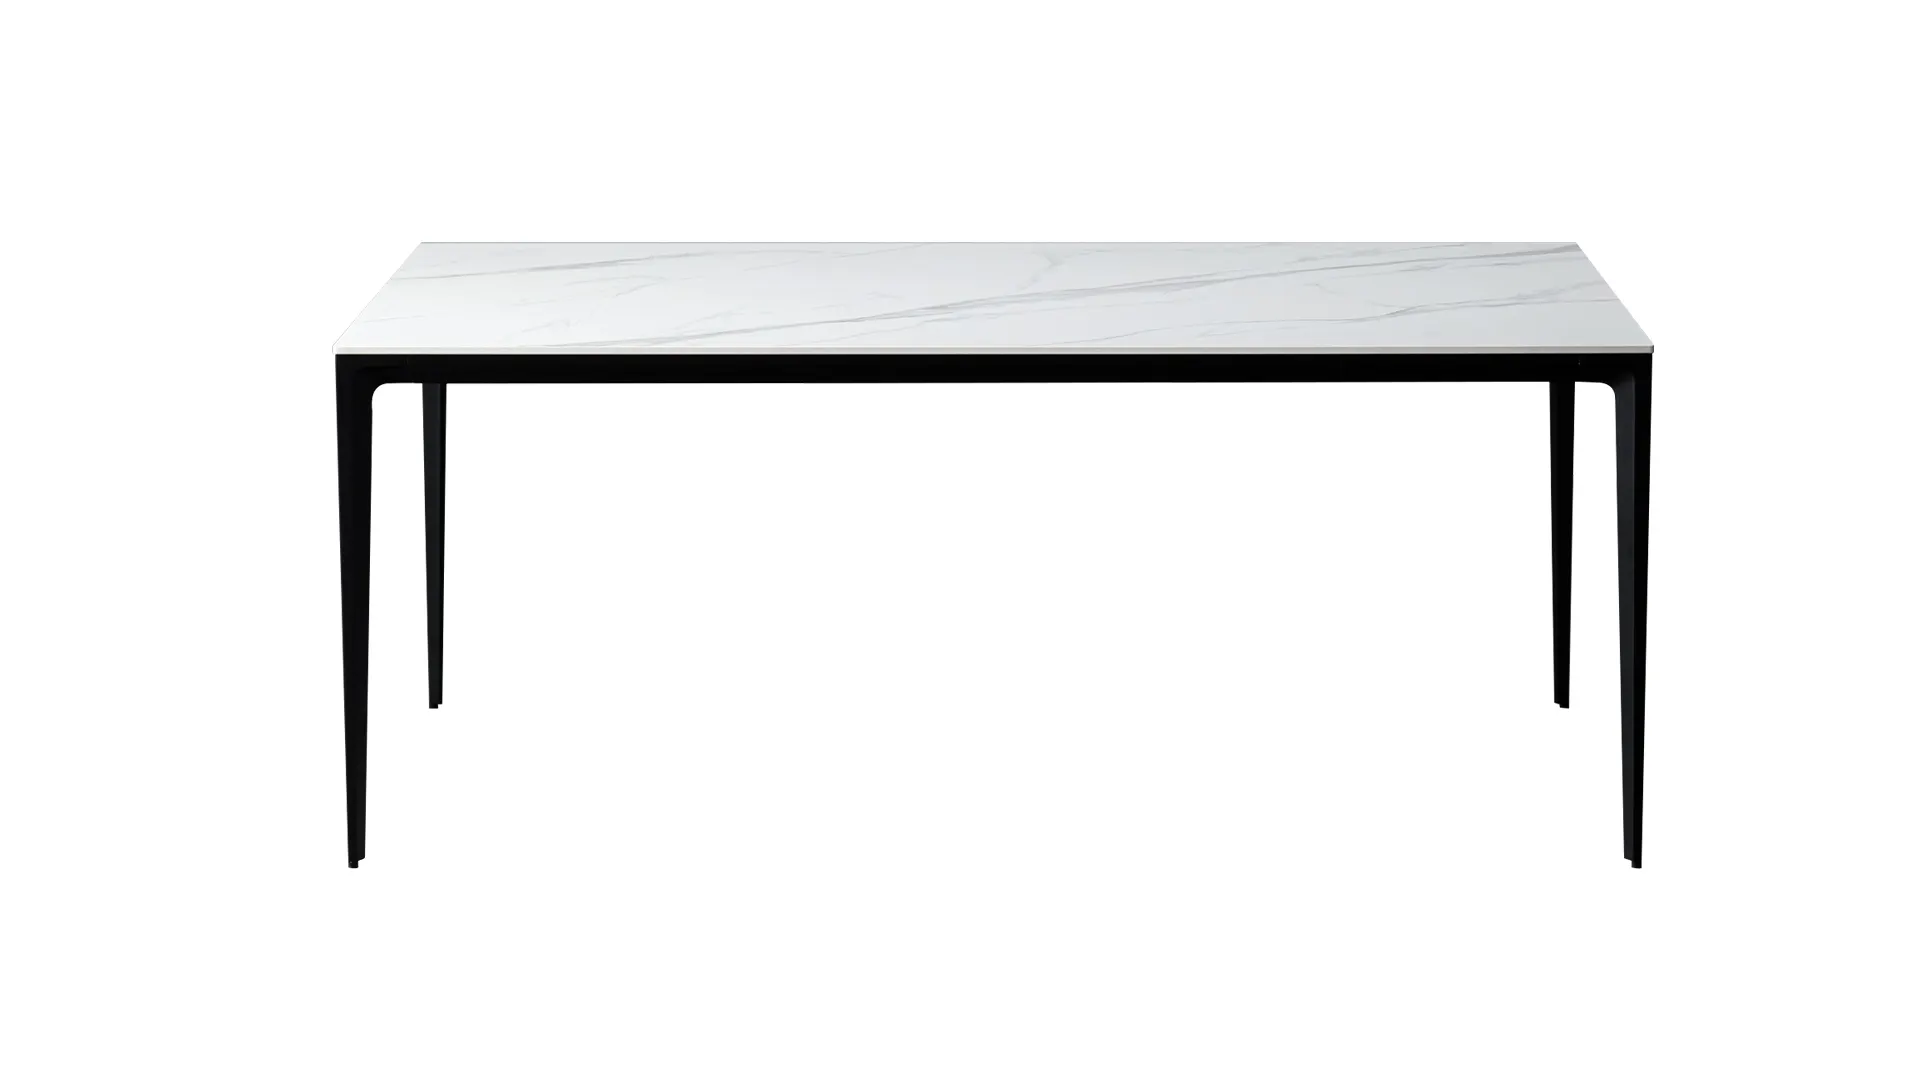 Innovation S modern white ceramic dining table Bk ciandre 1